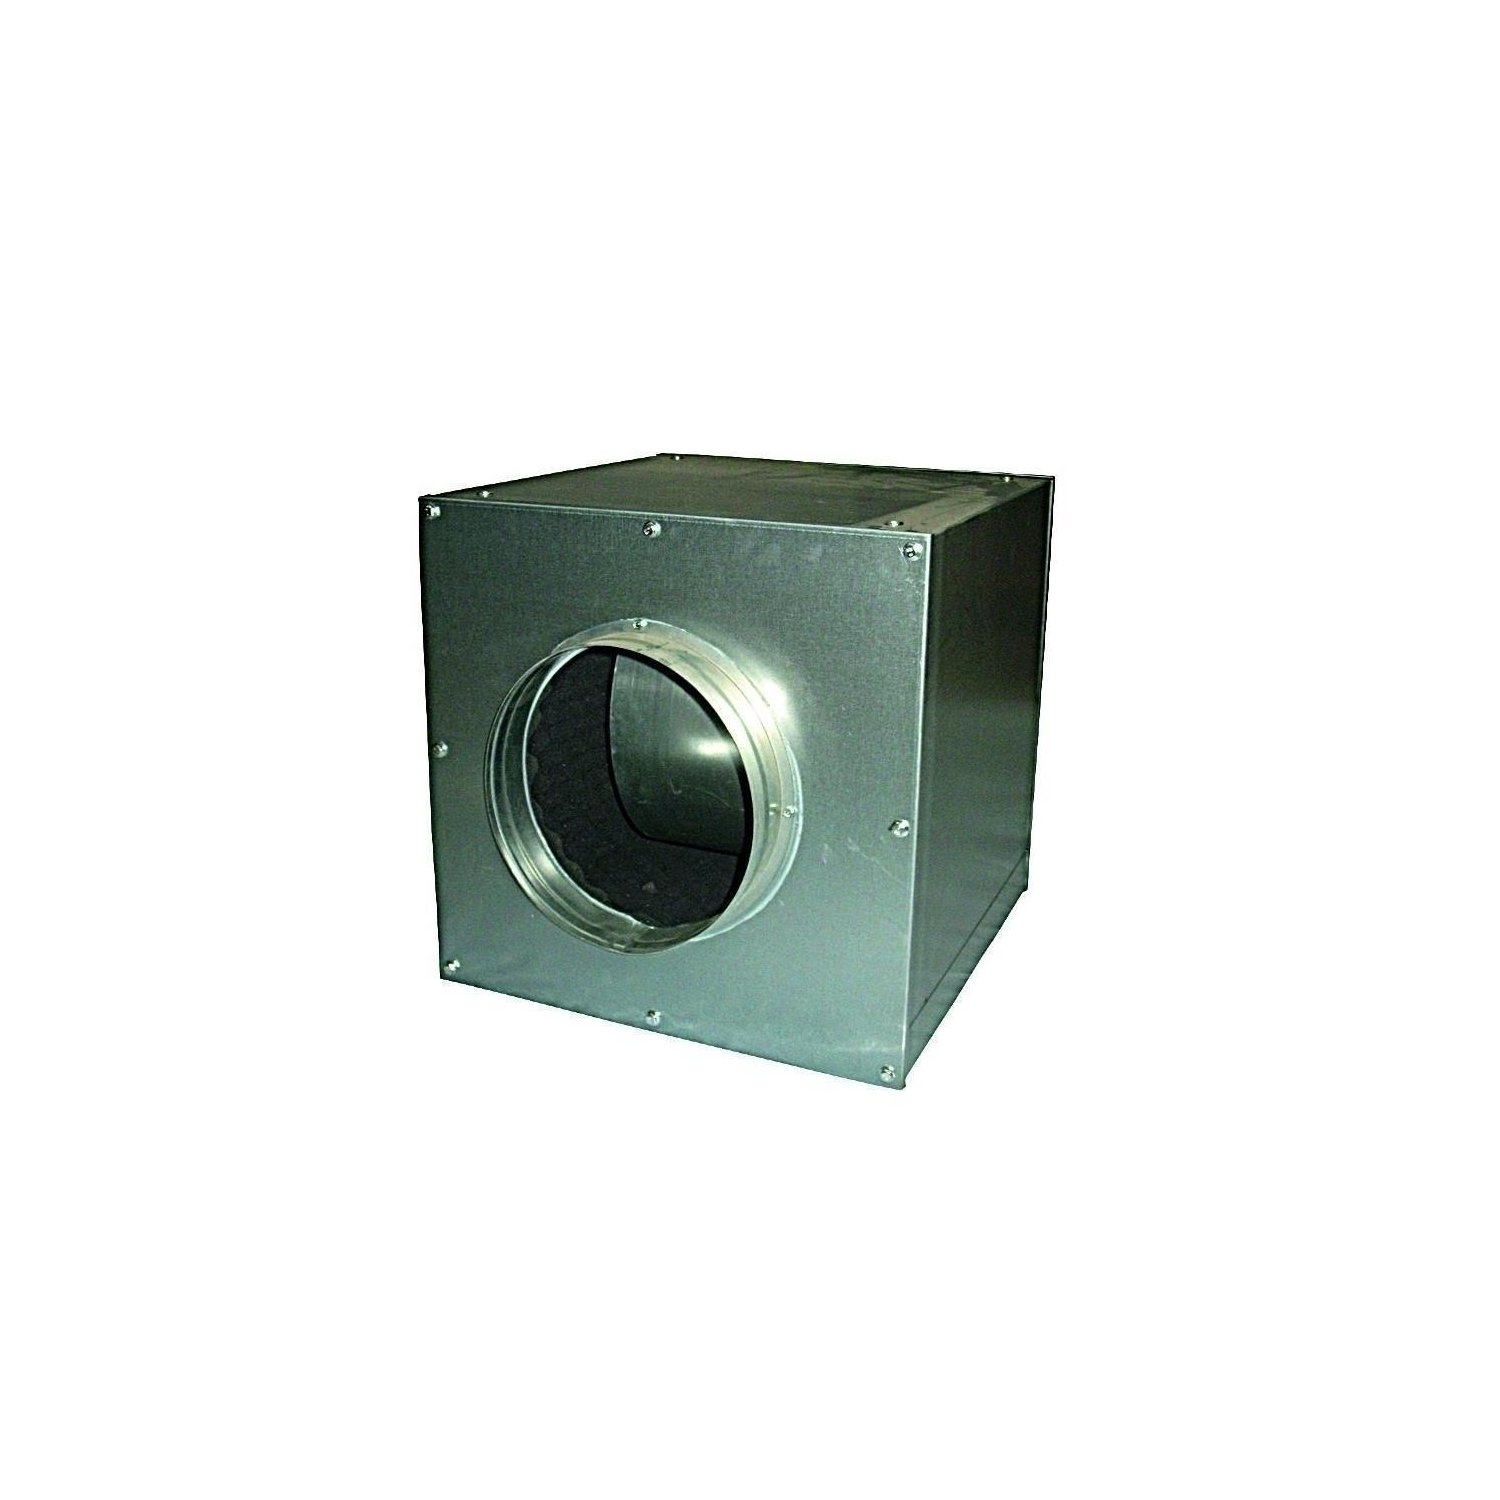 Cultivalley AC Lüfterbox 4250m-h aufgehangen Metall unter Luft & Wasser > Lüftung > Lüfter